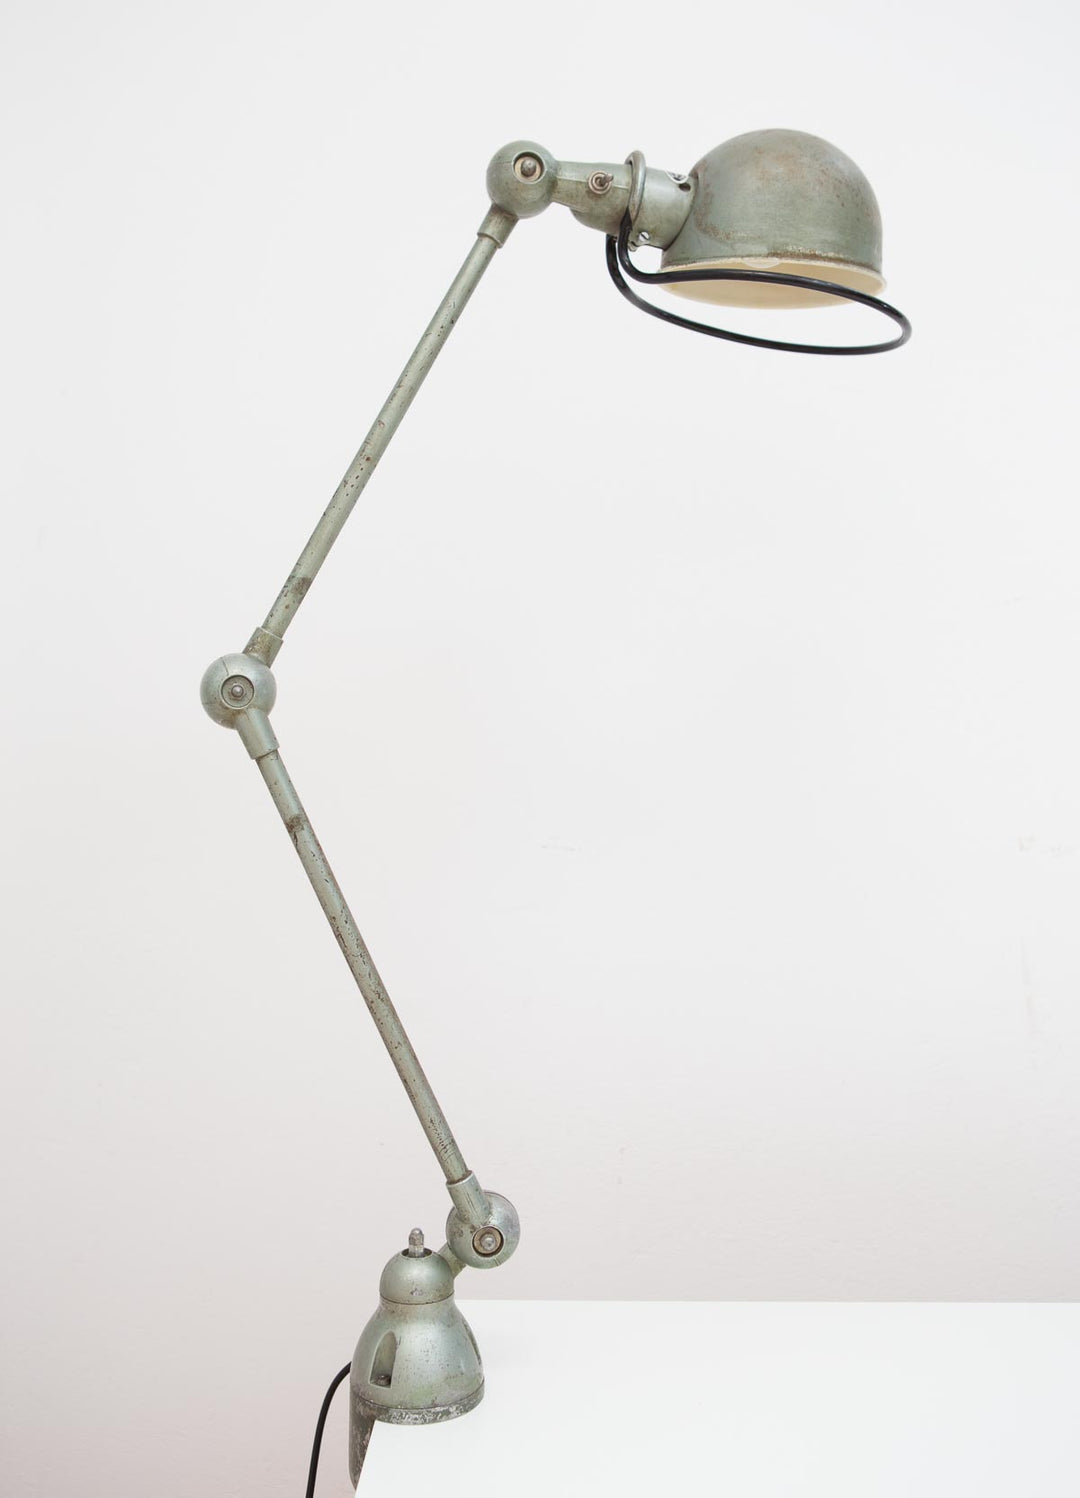 Lámpara industrial Jielde 2 brazos antigua (VENDIDA)